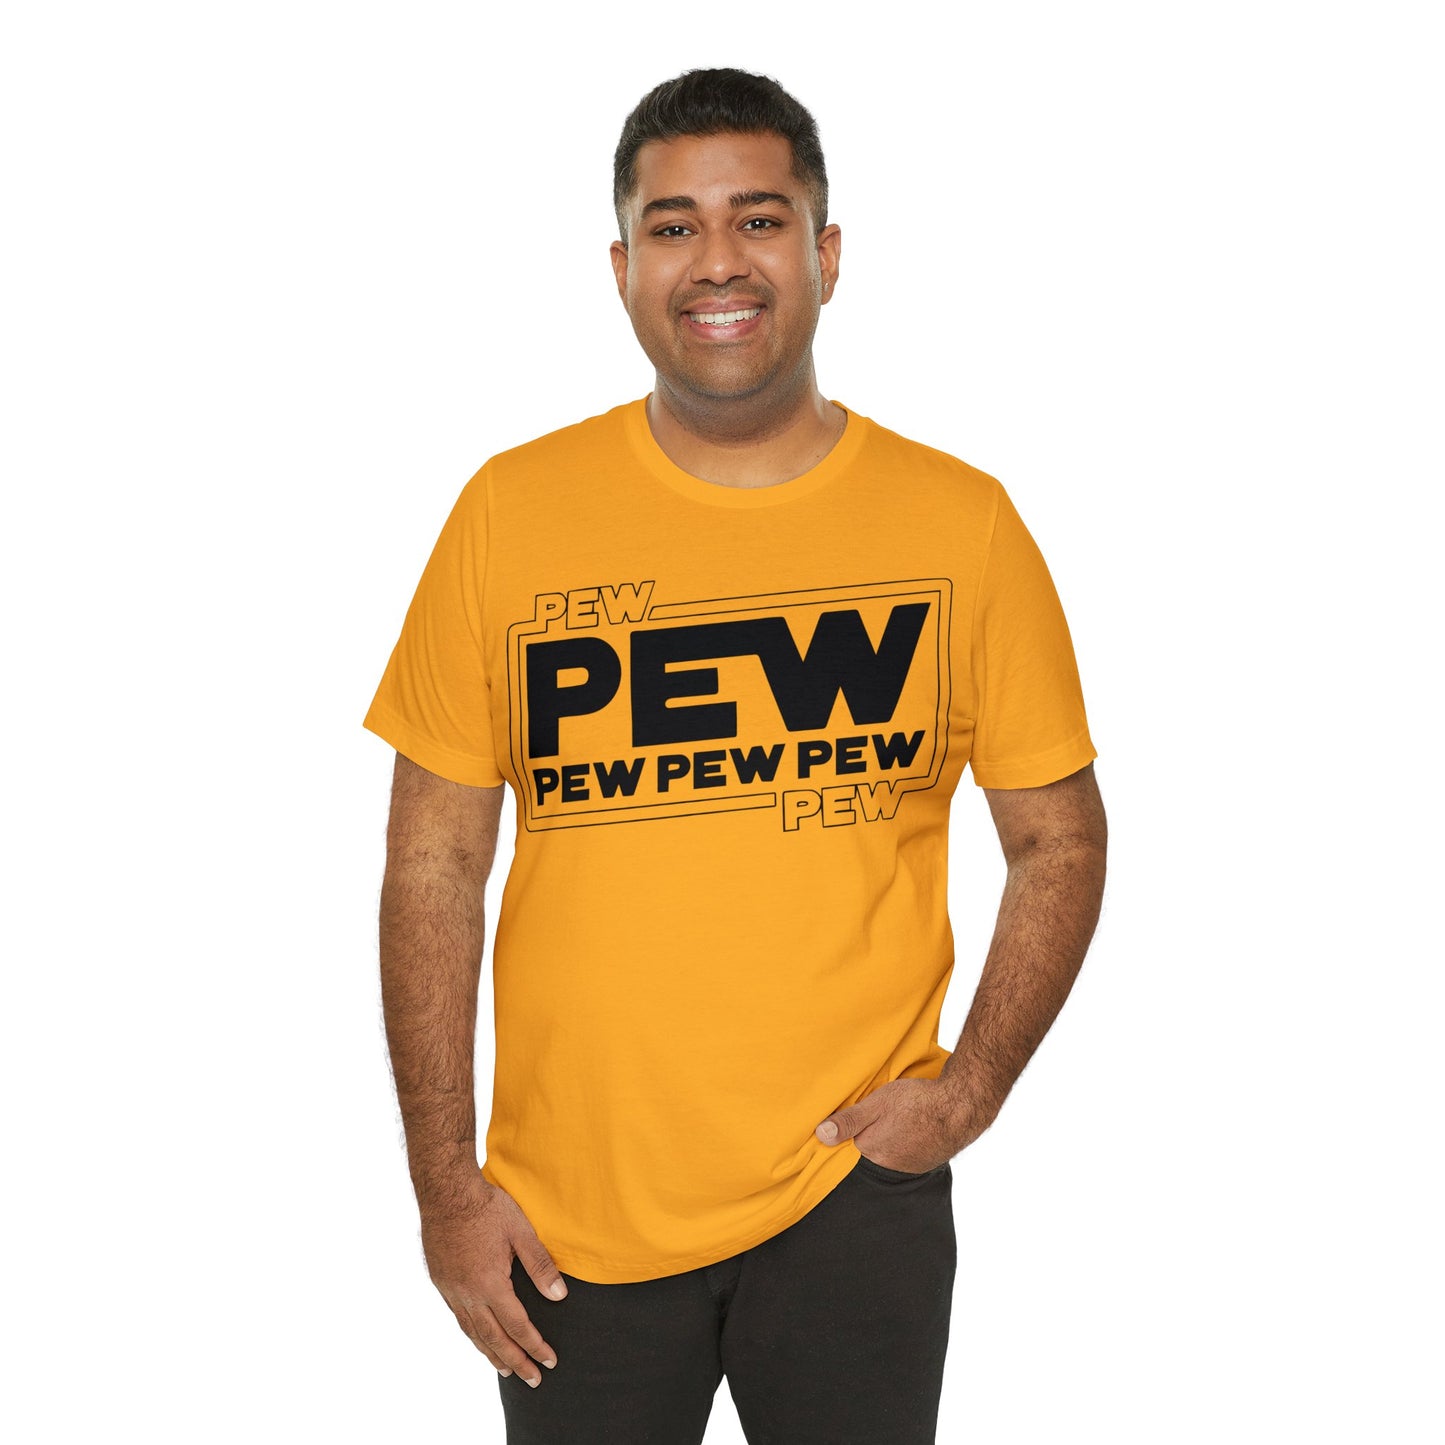 pew pew star wars tshirt